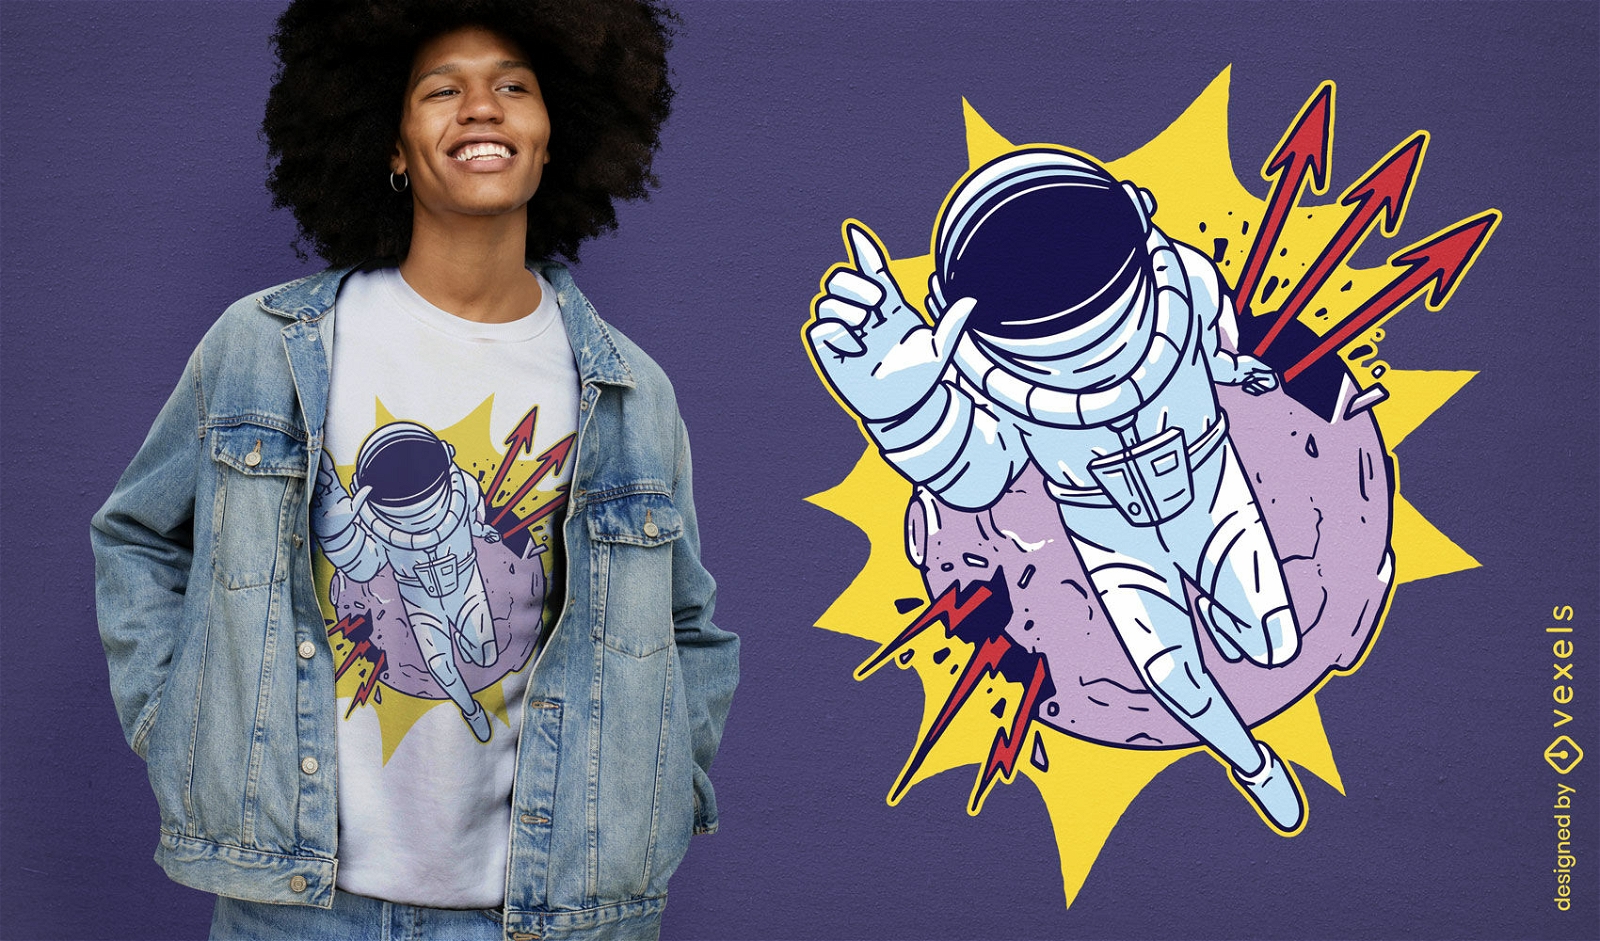 Dise?o de camiseta de astronauta y luna explosiva.